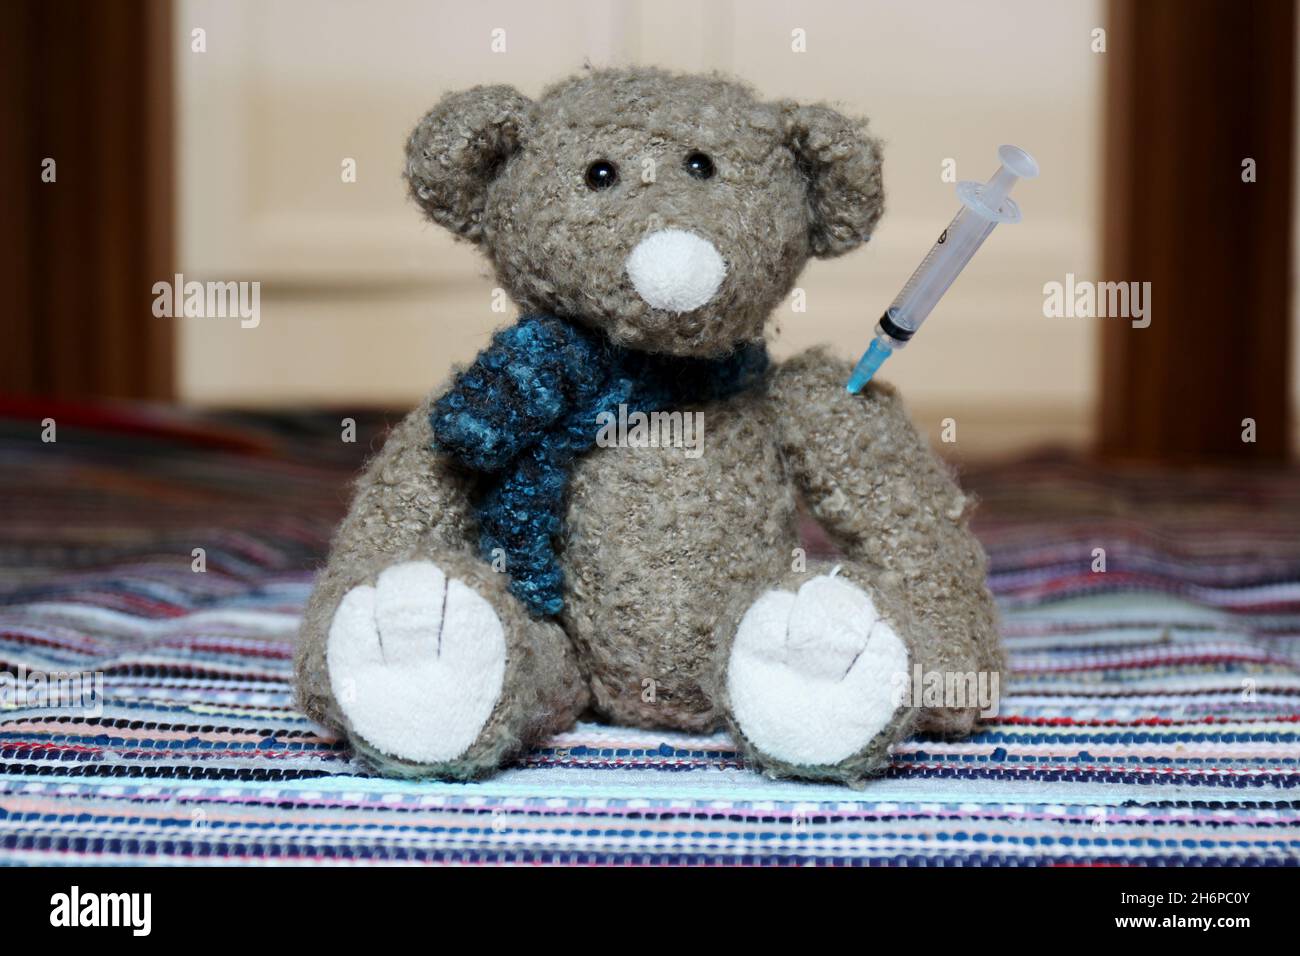 Kuscheltier Teddy mit Spritze im Arm, sitzend auf einem bunten Teppich. Stock Photo